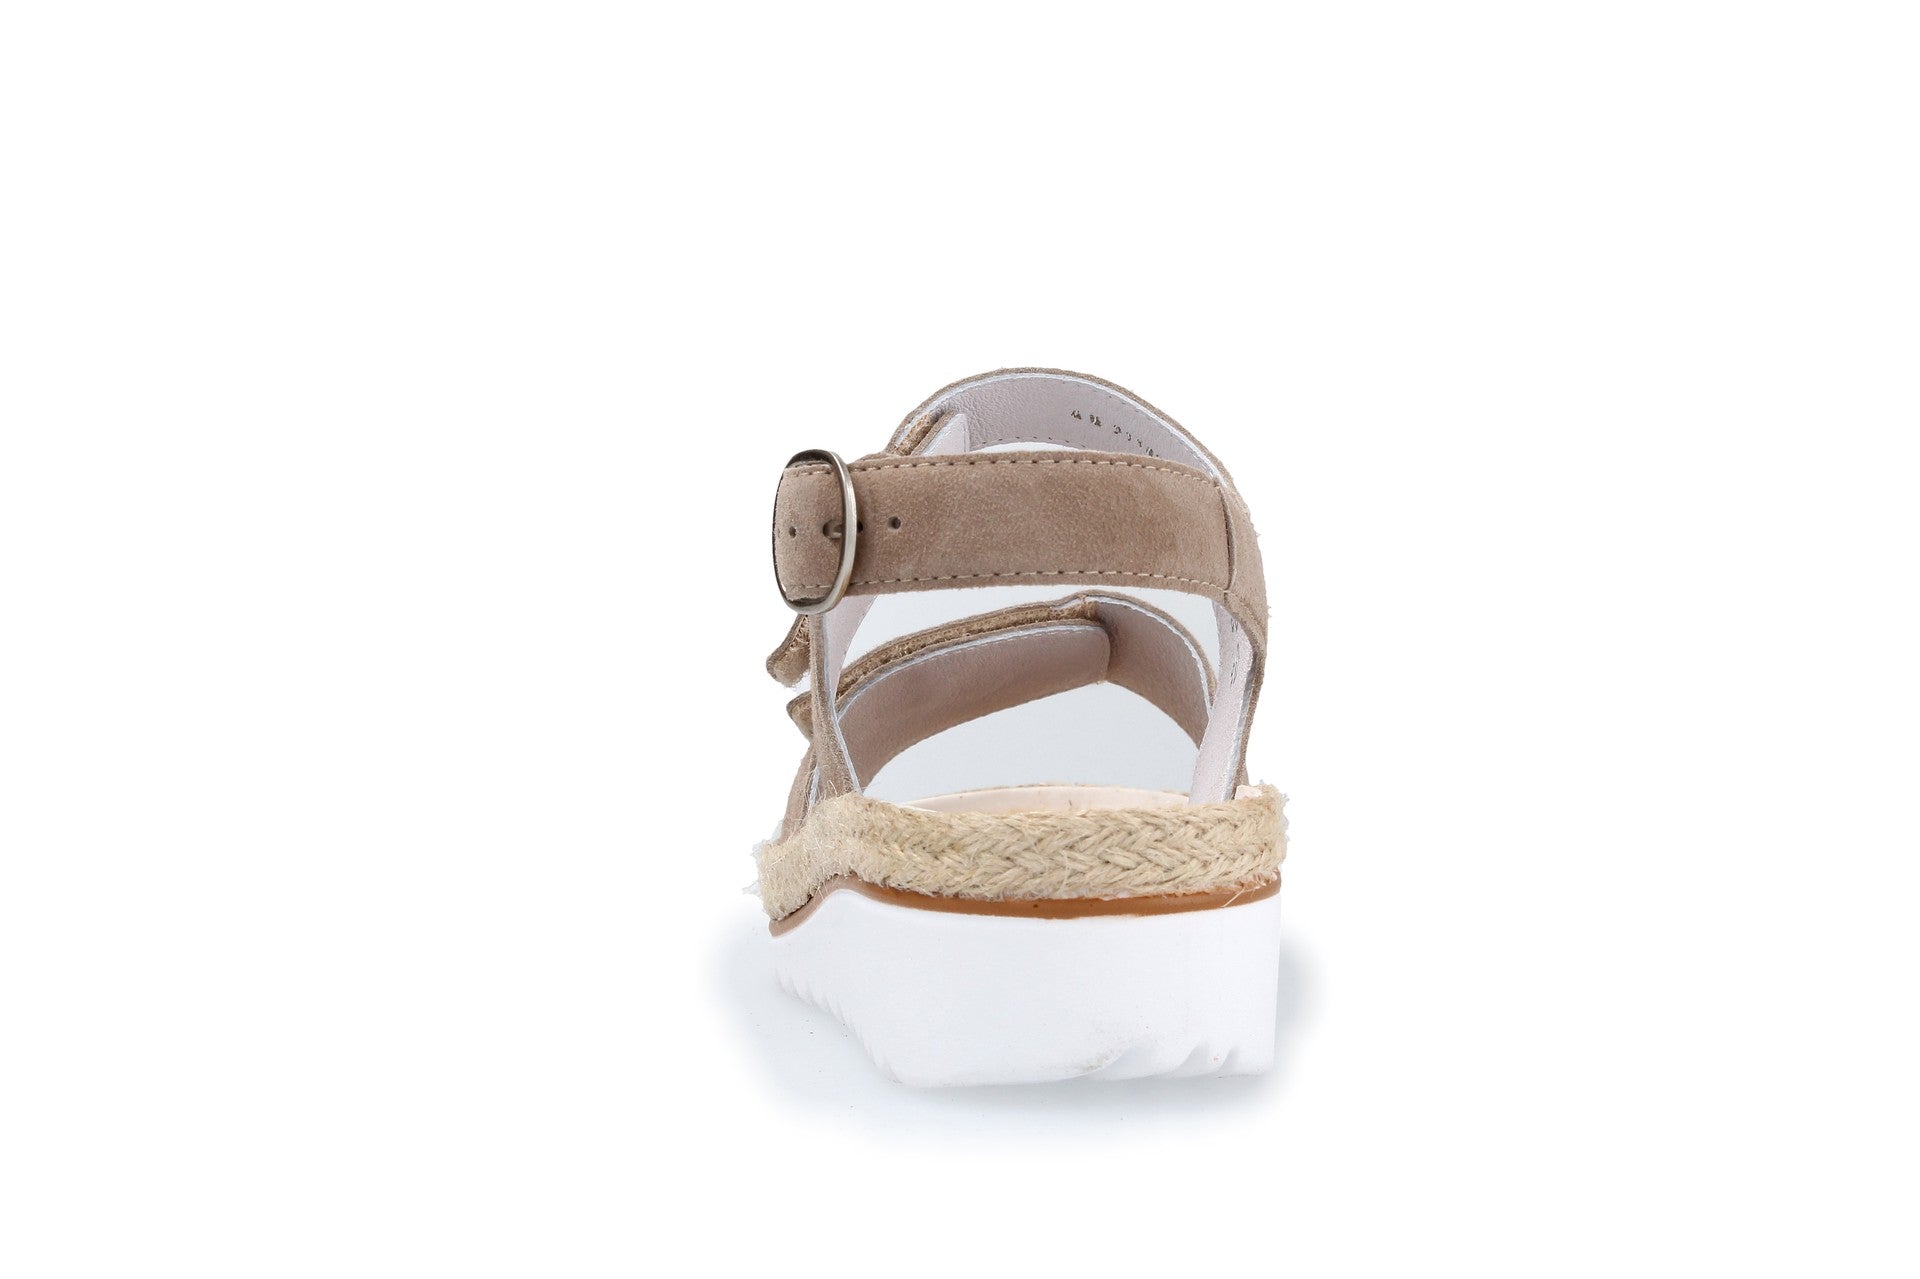 Trixi – panna – sandals